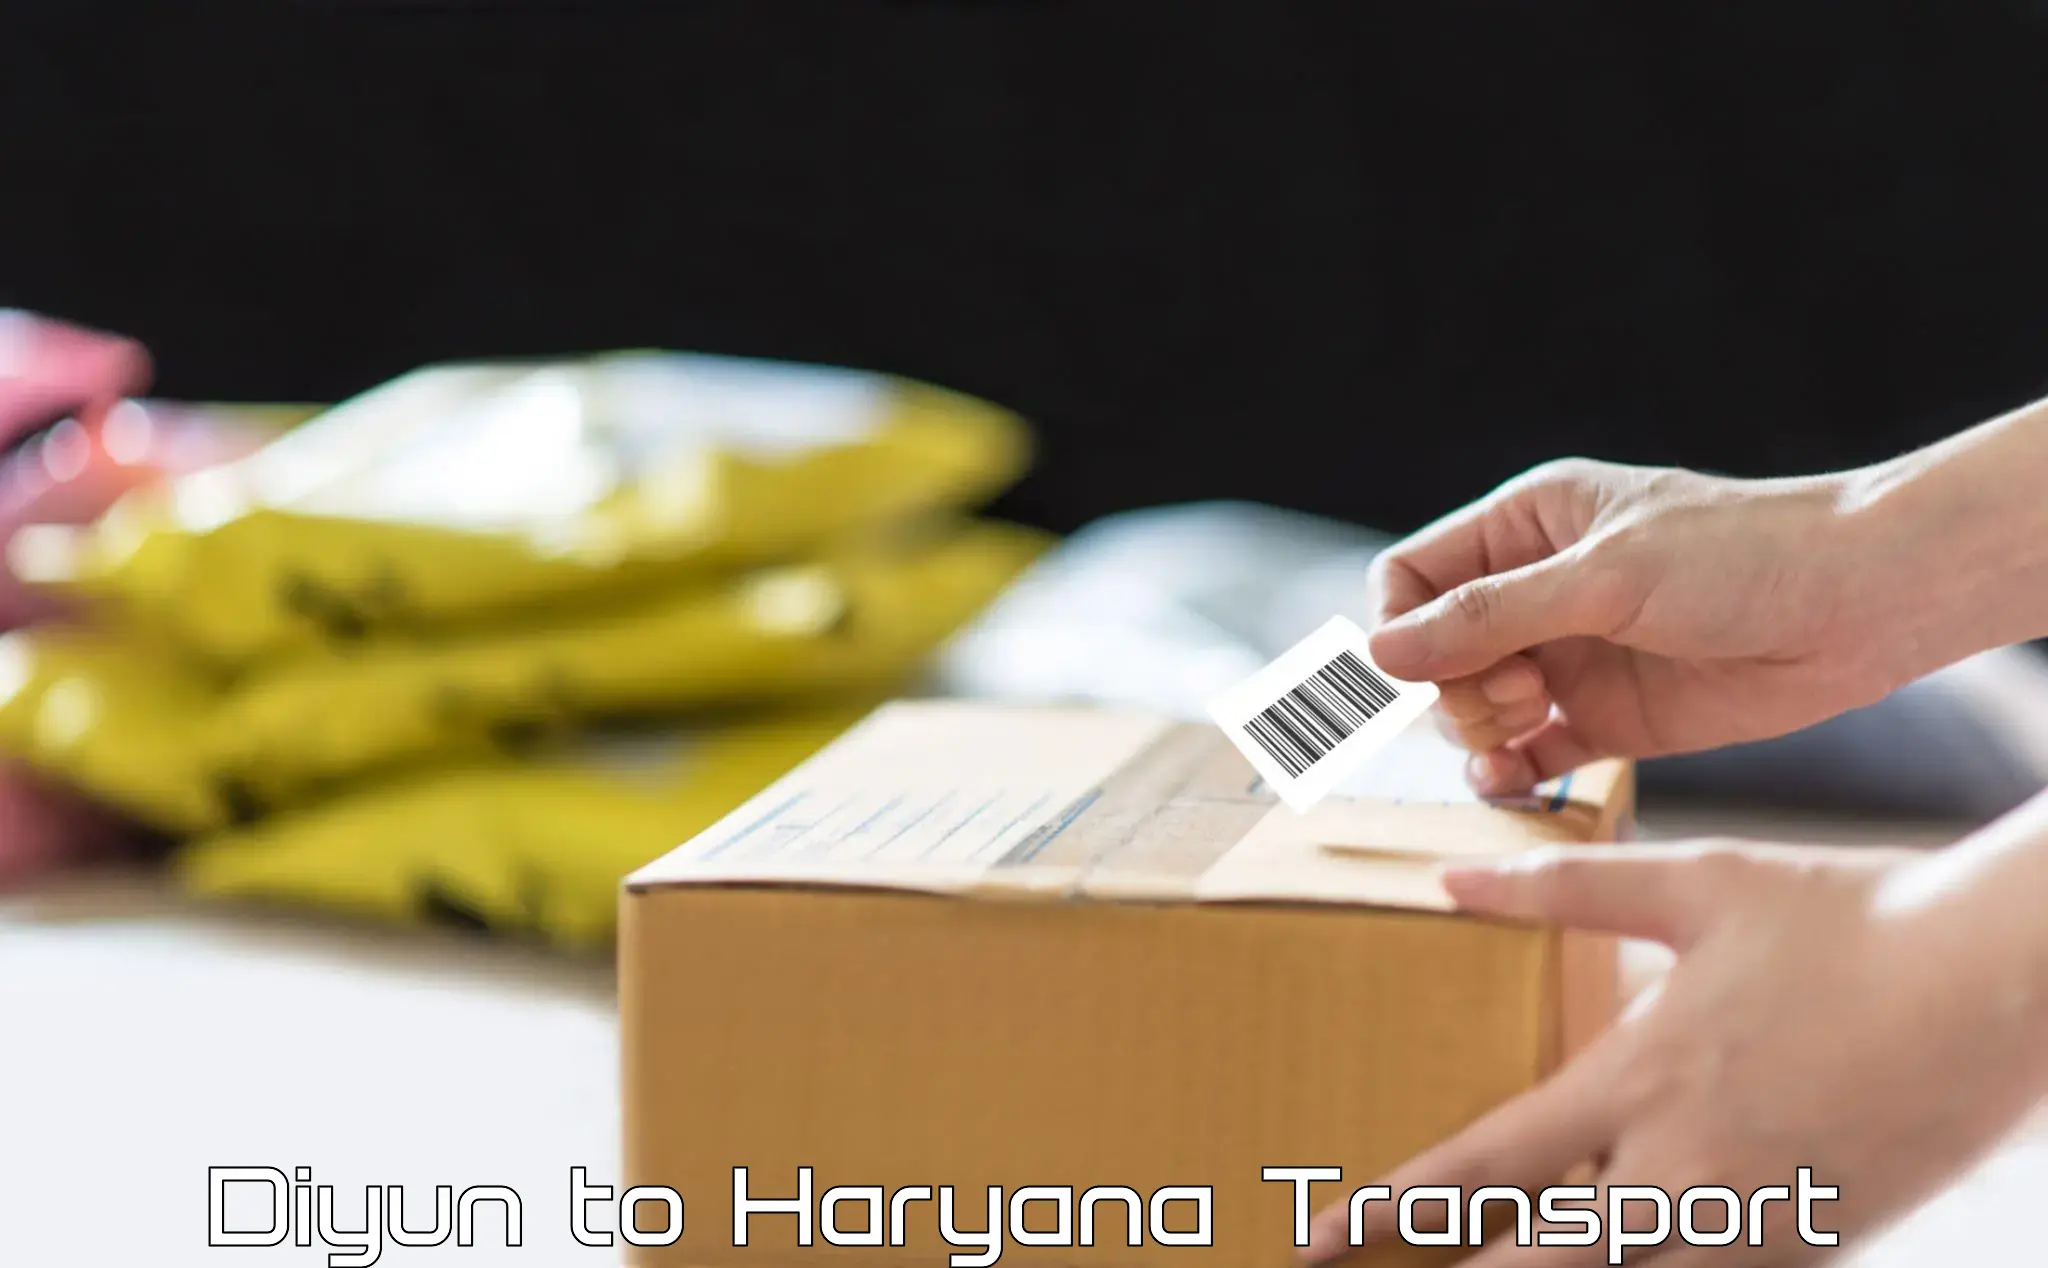 Furniture transport service Diyun to Panipat